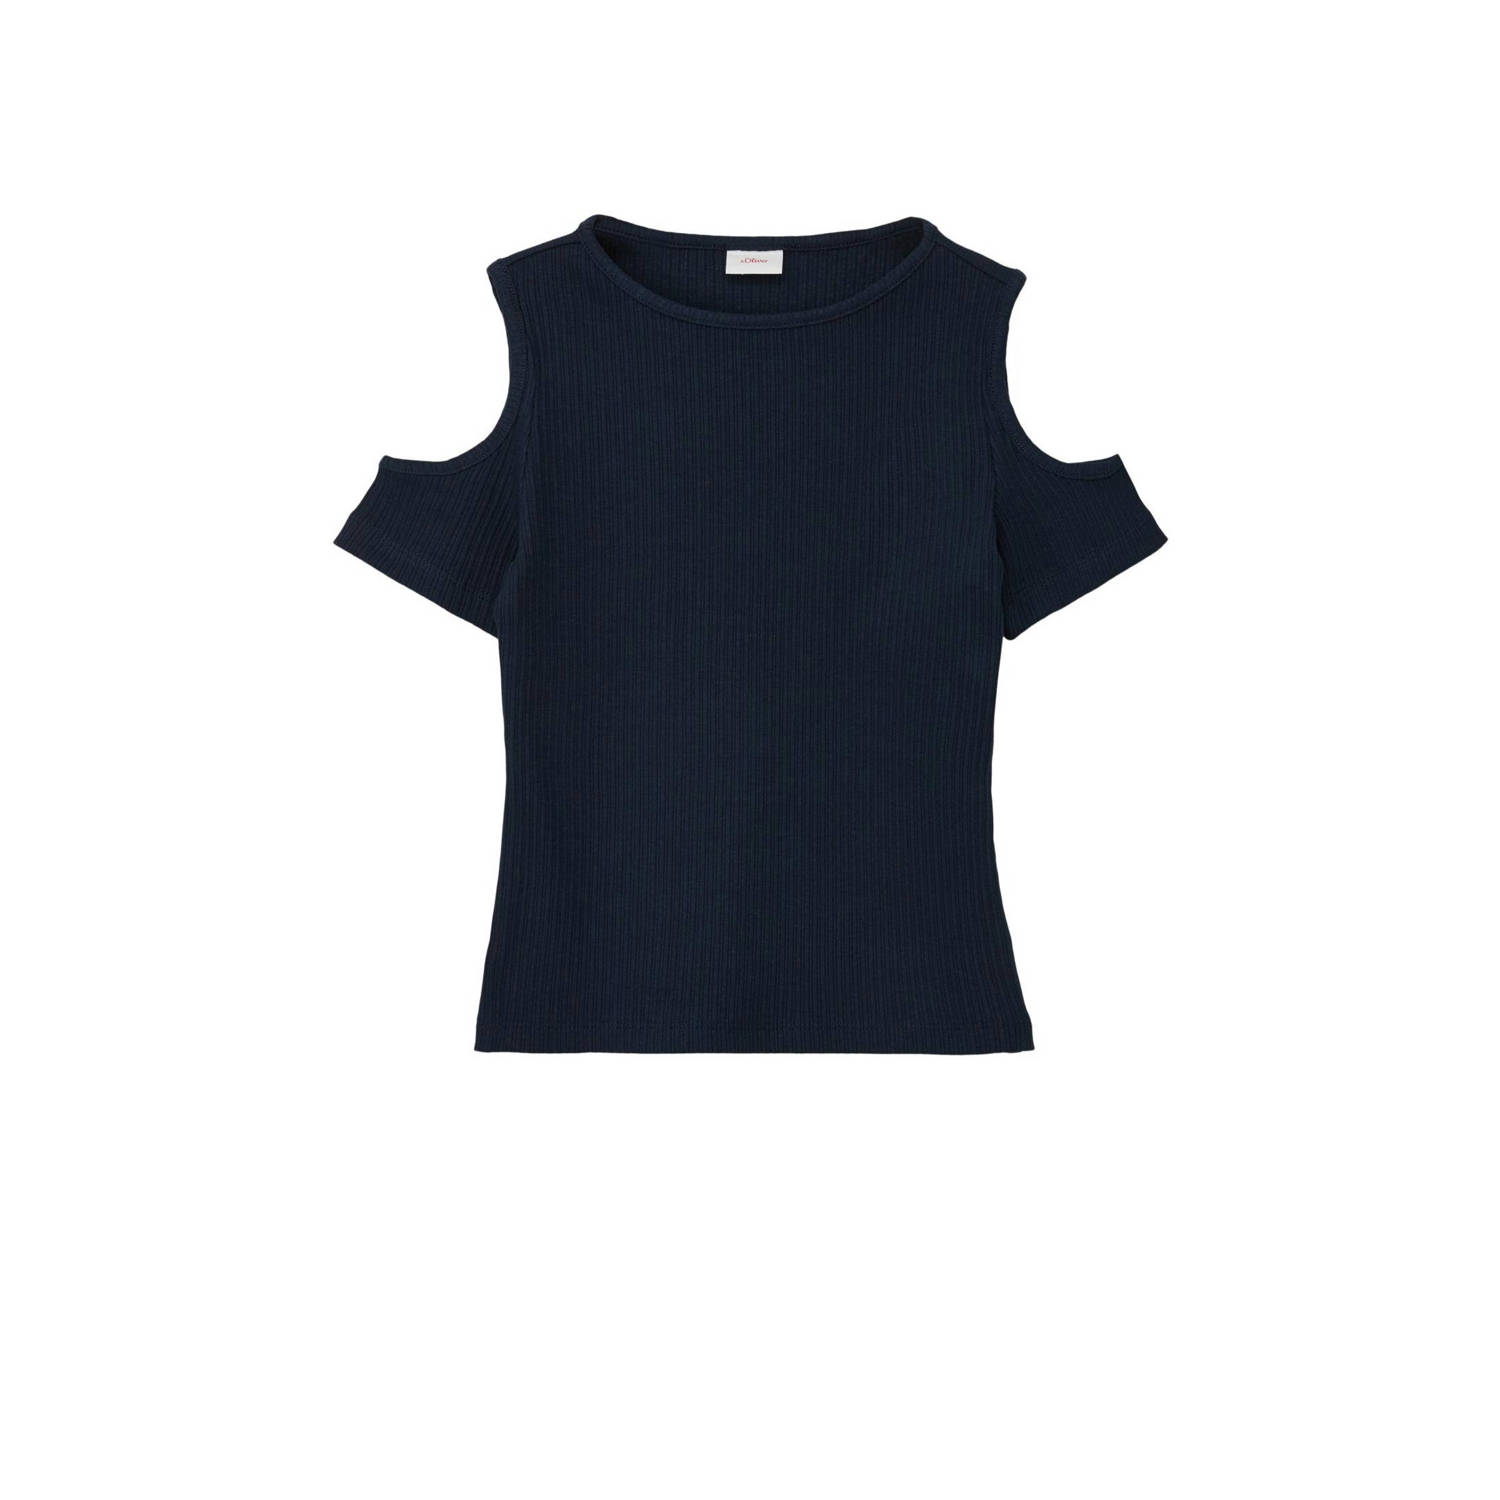 S.Oliver T-shirt donkerblauw Meisjes Stretchkatoen Ronde hals Effen 152